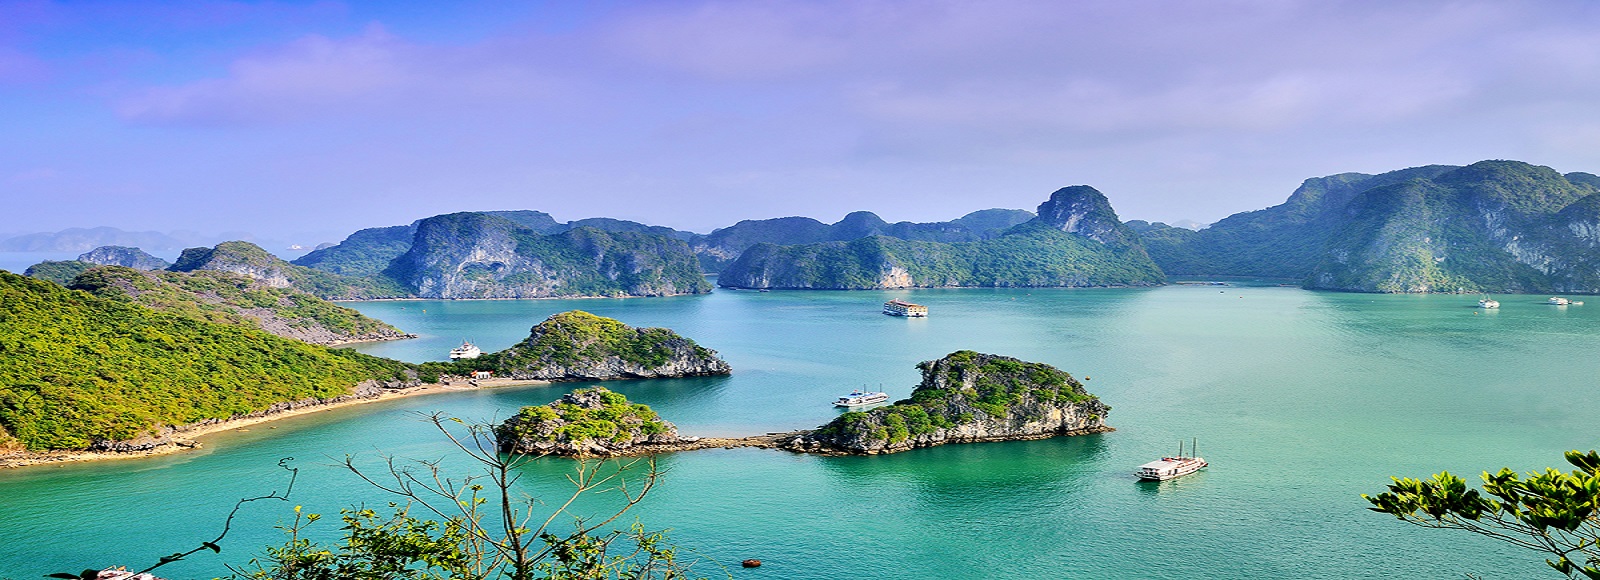 Viajes a Grandes Ciudades Vietnam  Vietnam 